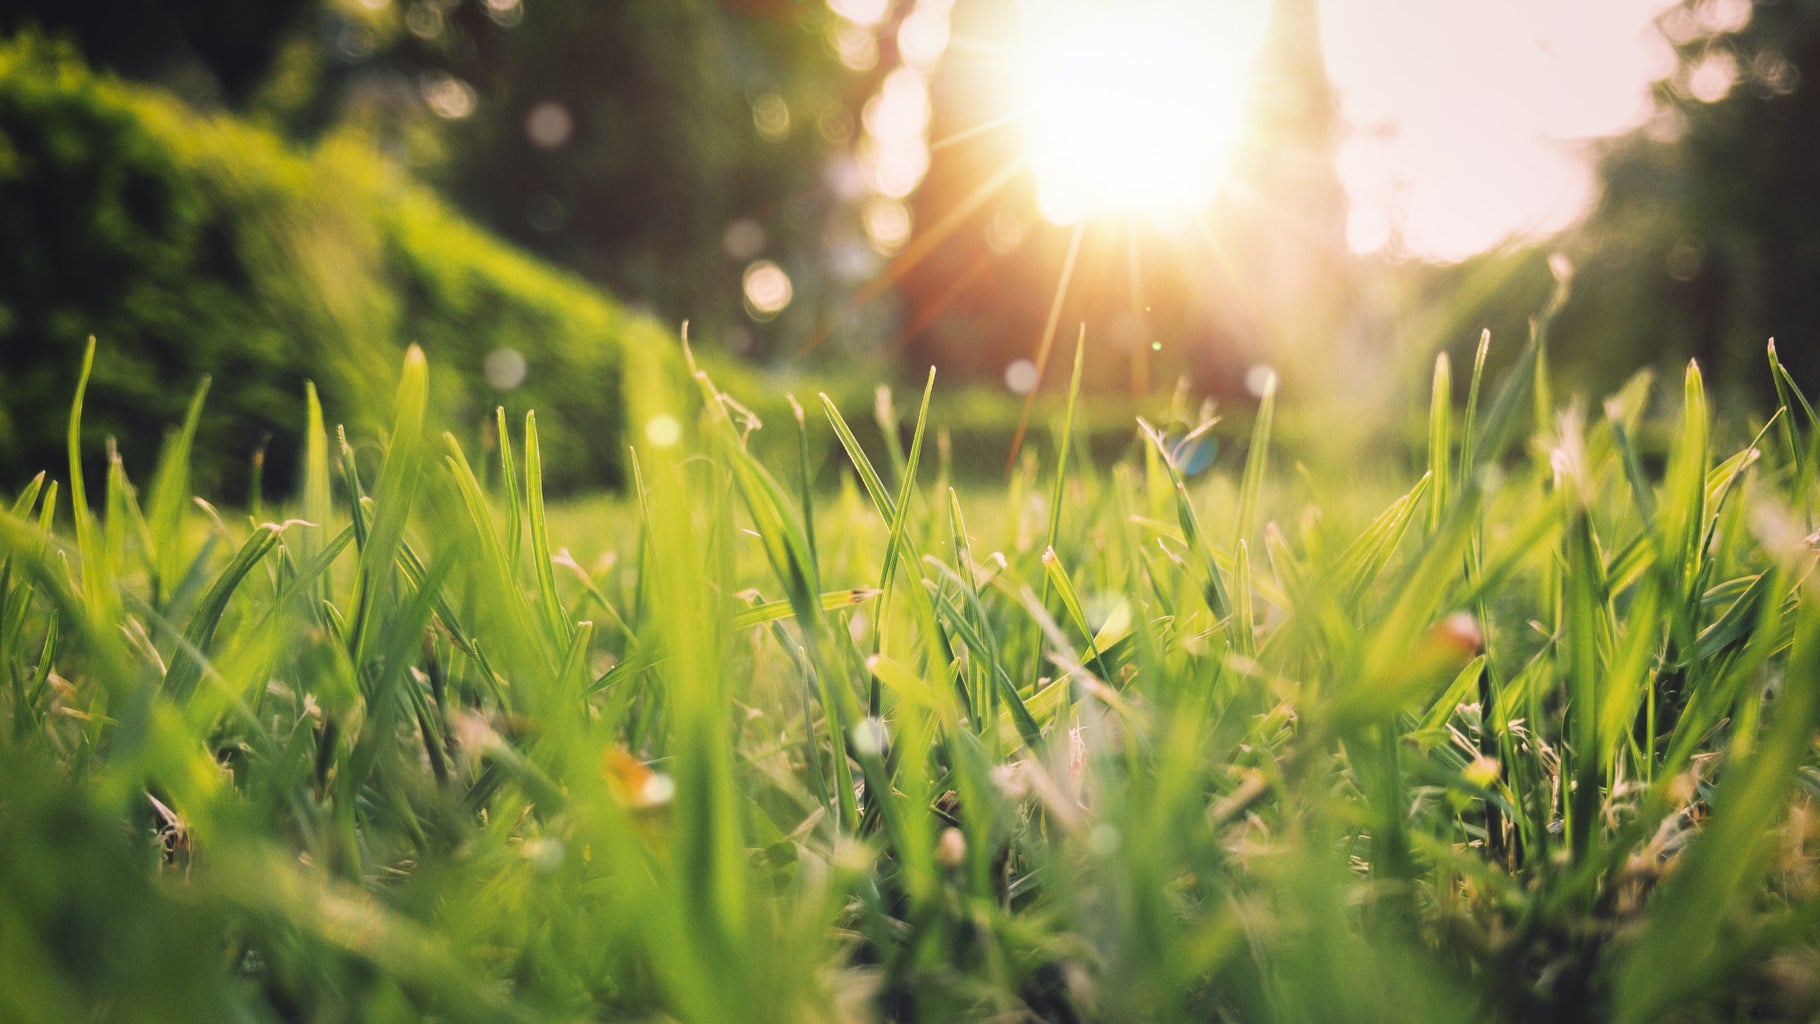 Green grass in the sunlight